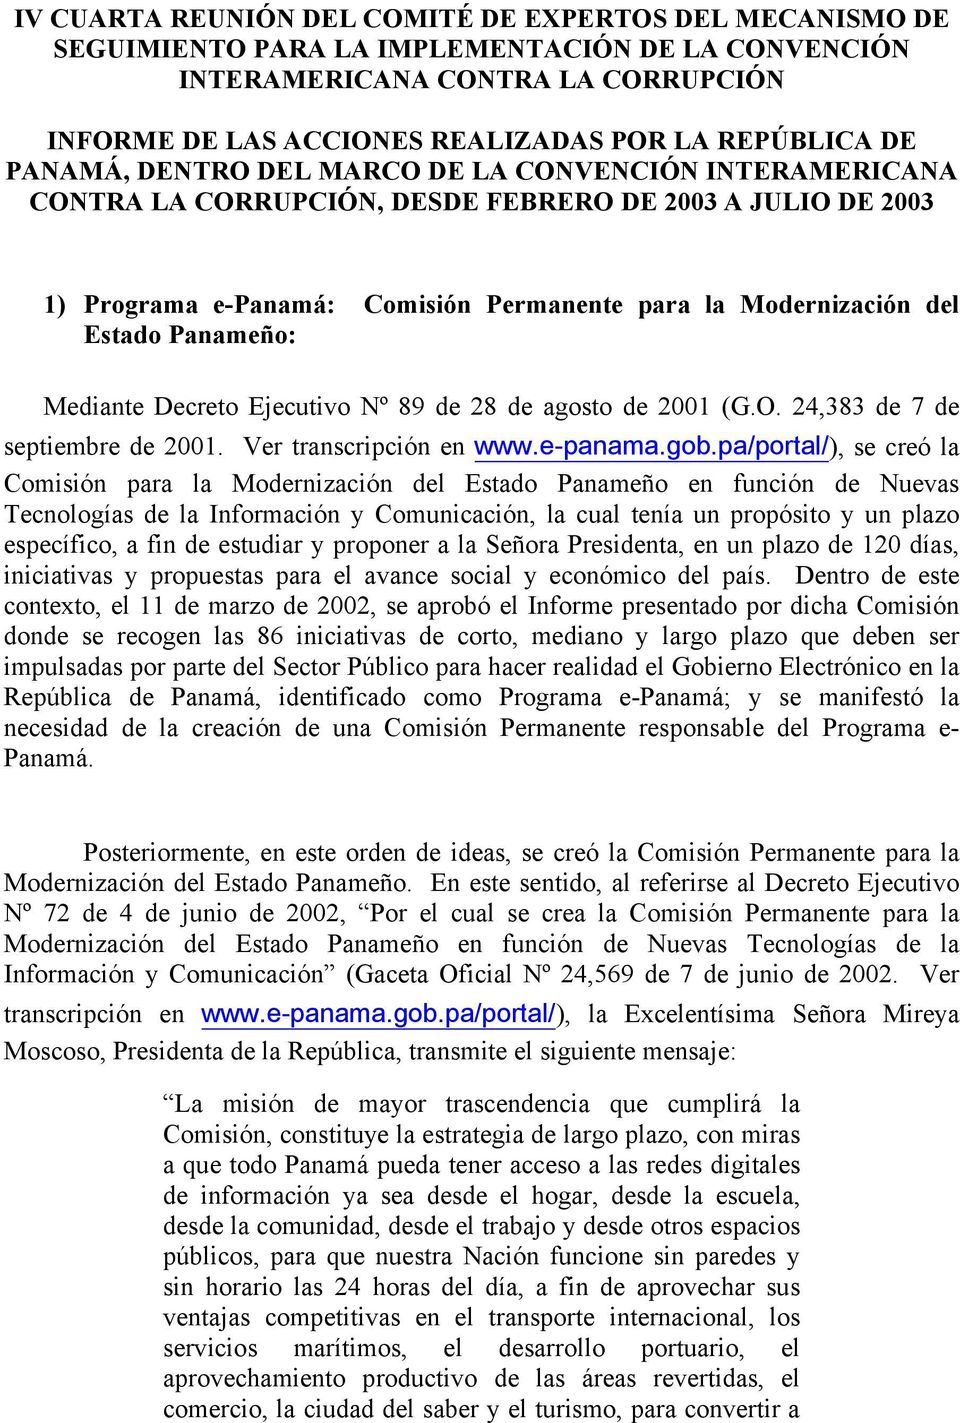 Panameño: Mediante Decreto Ejecutivo Nº 89 de 28 de agosto de 2001 (G.O. 24,383 de 7 de septiembre de 2001. Ver transcripción en www.e-panama.gob.